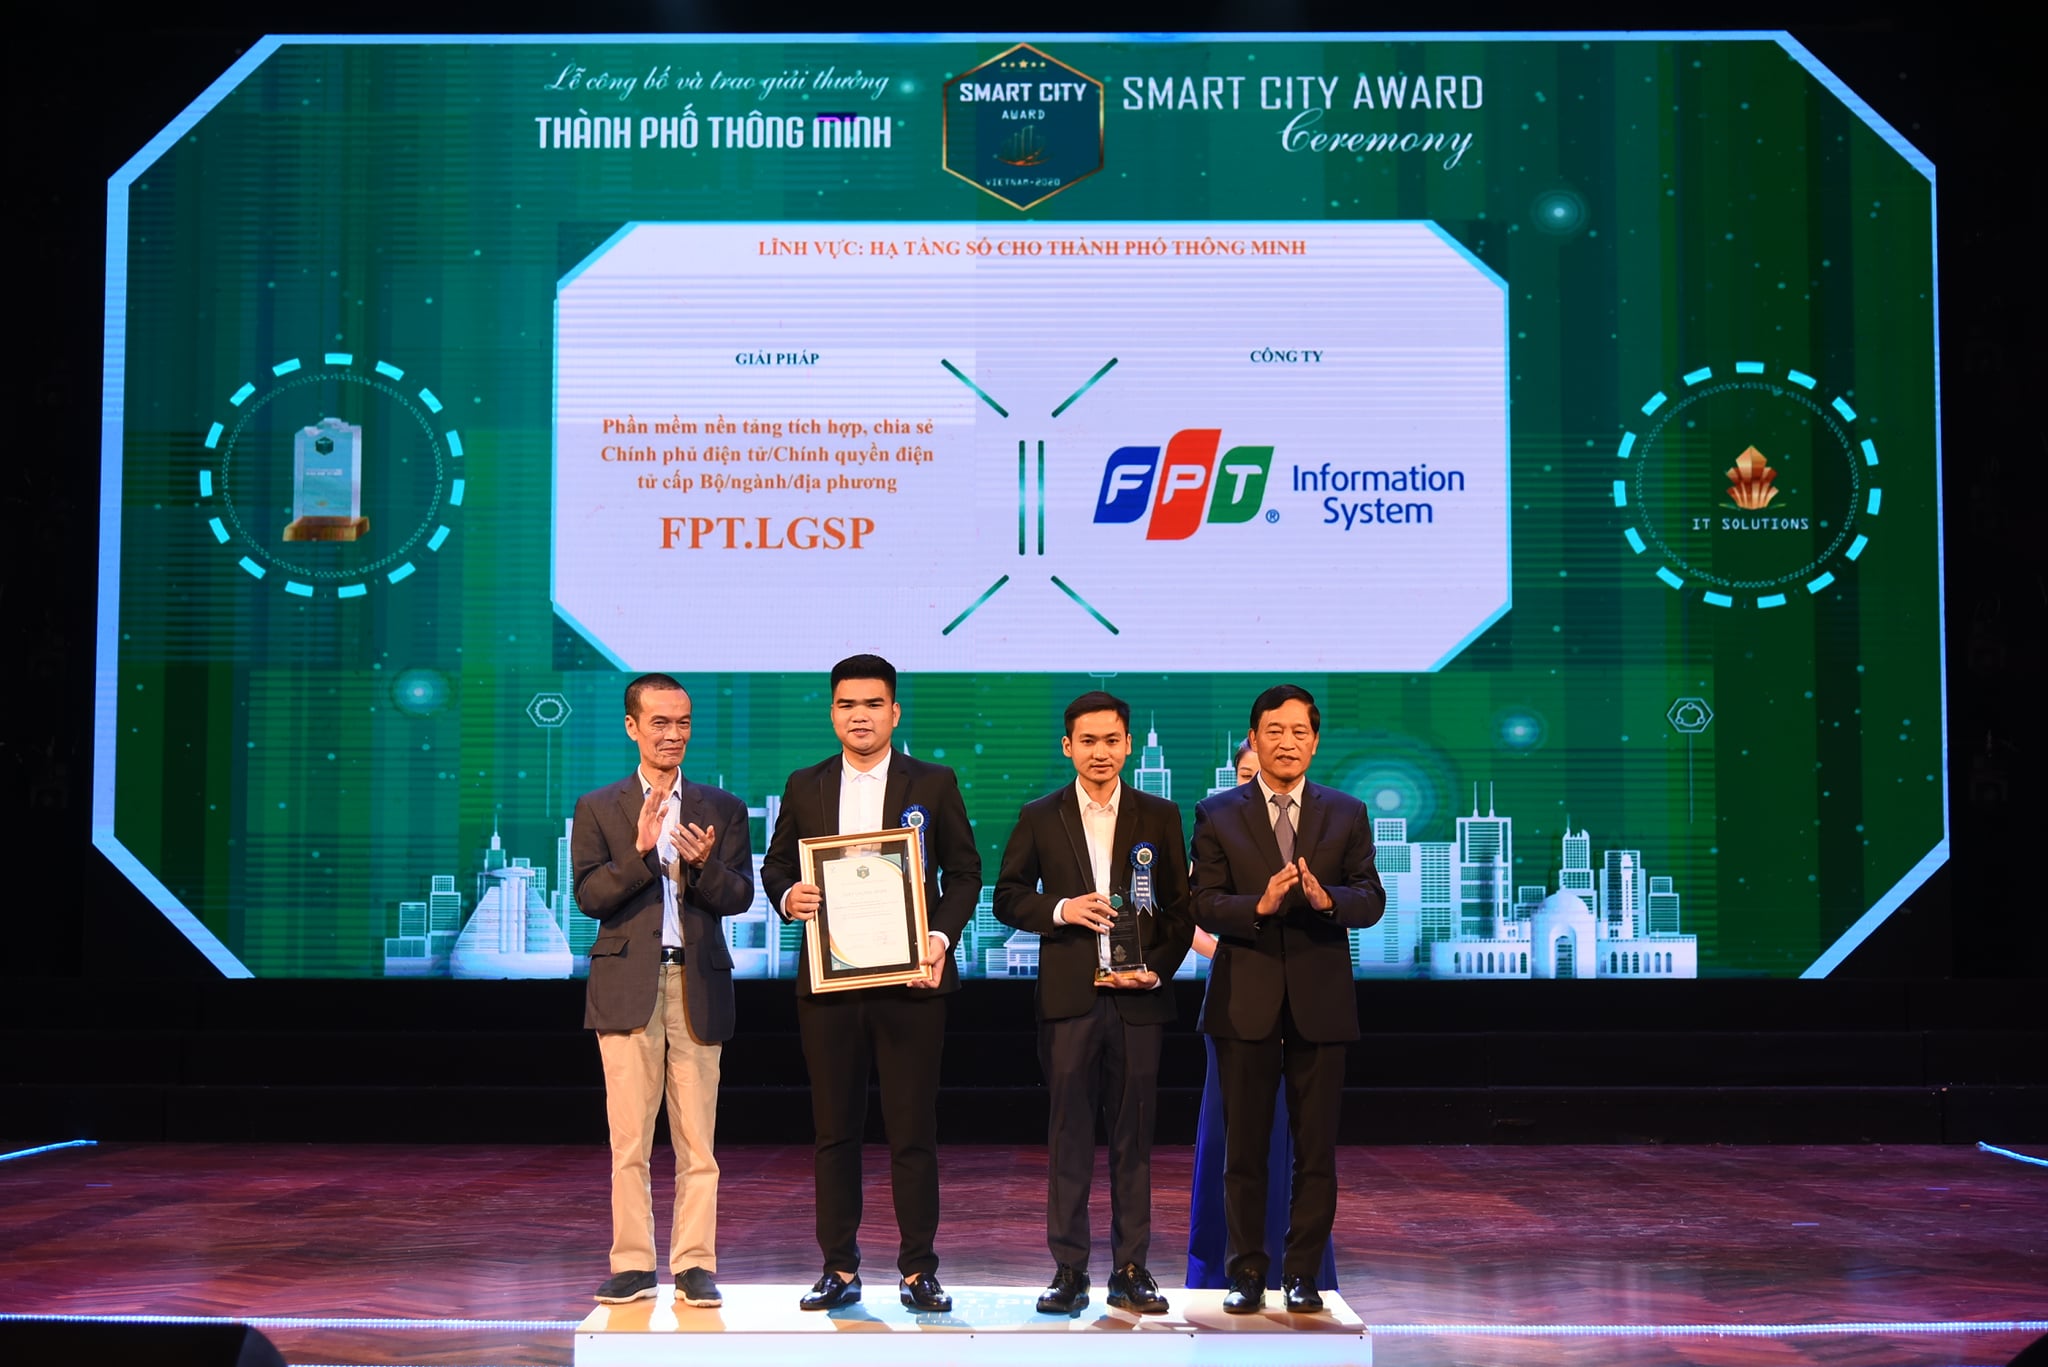 Nền tảng tích hợp, chia sẻ Chính phủ điện tử/Chính quyền điện tử cấp Bộ/ngành/địa phương – FPT.LGSP đạt Giải thưởng Thành phố thông minh Việt Nam 2020